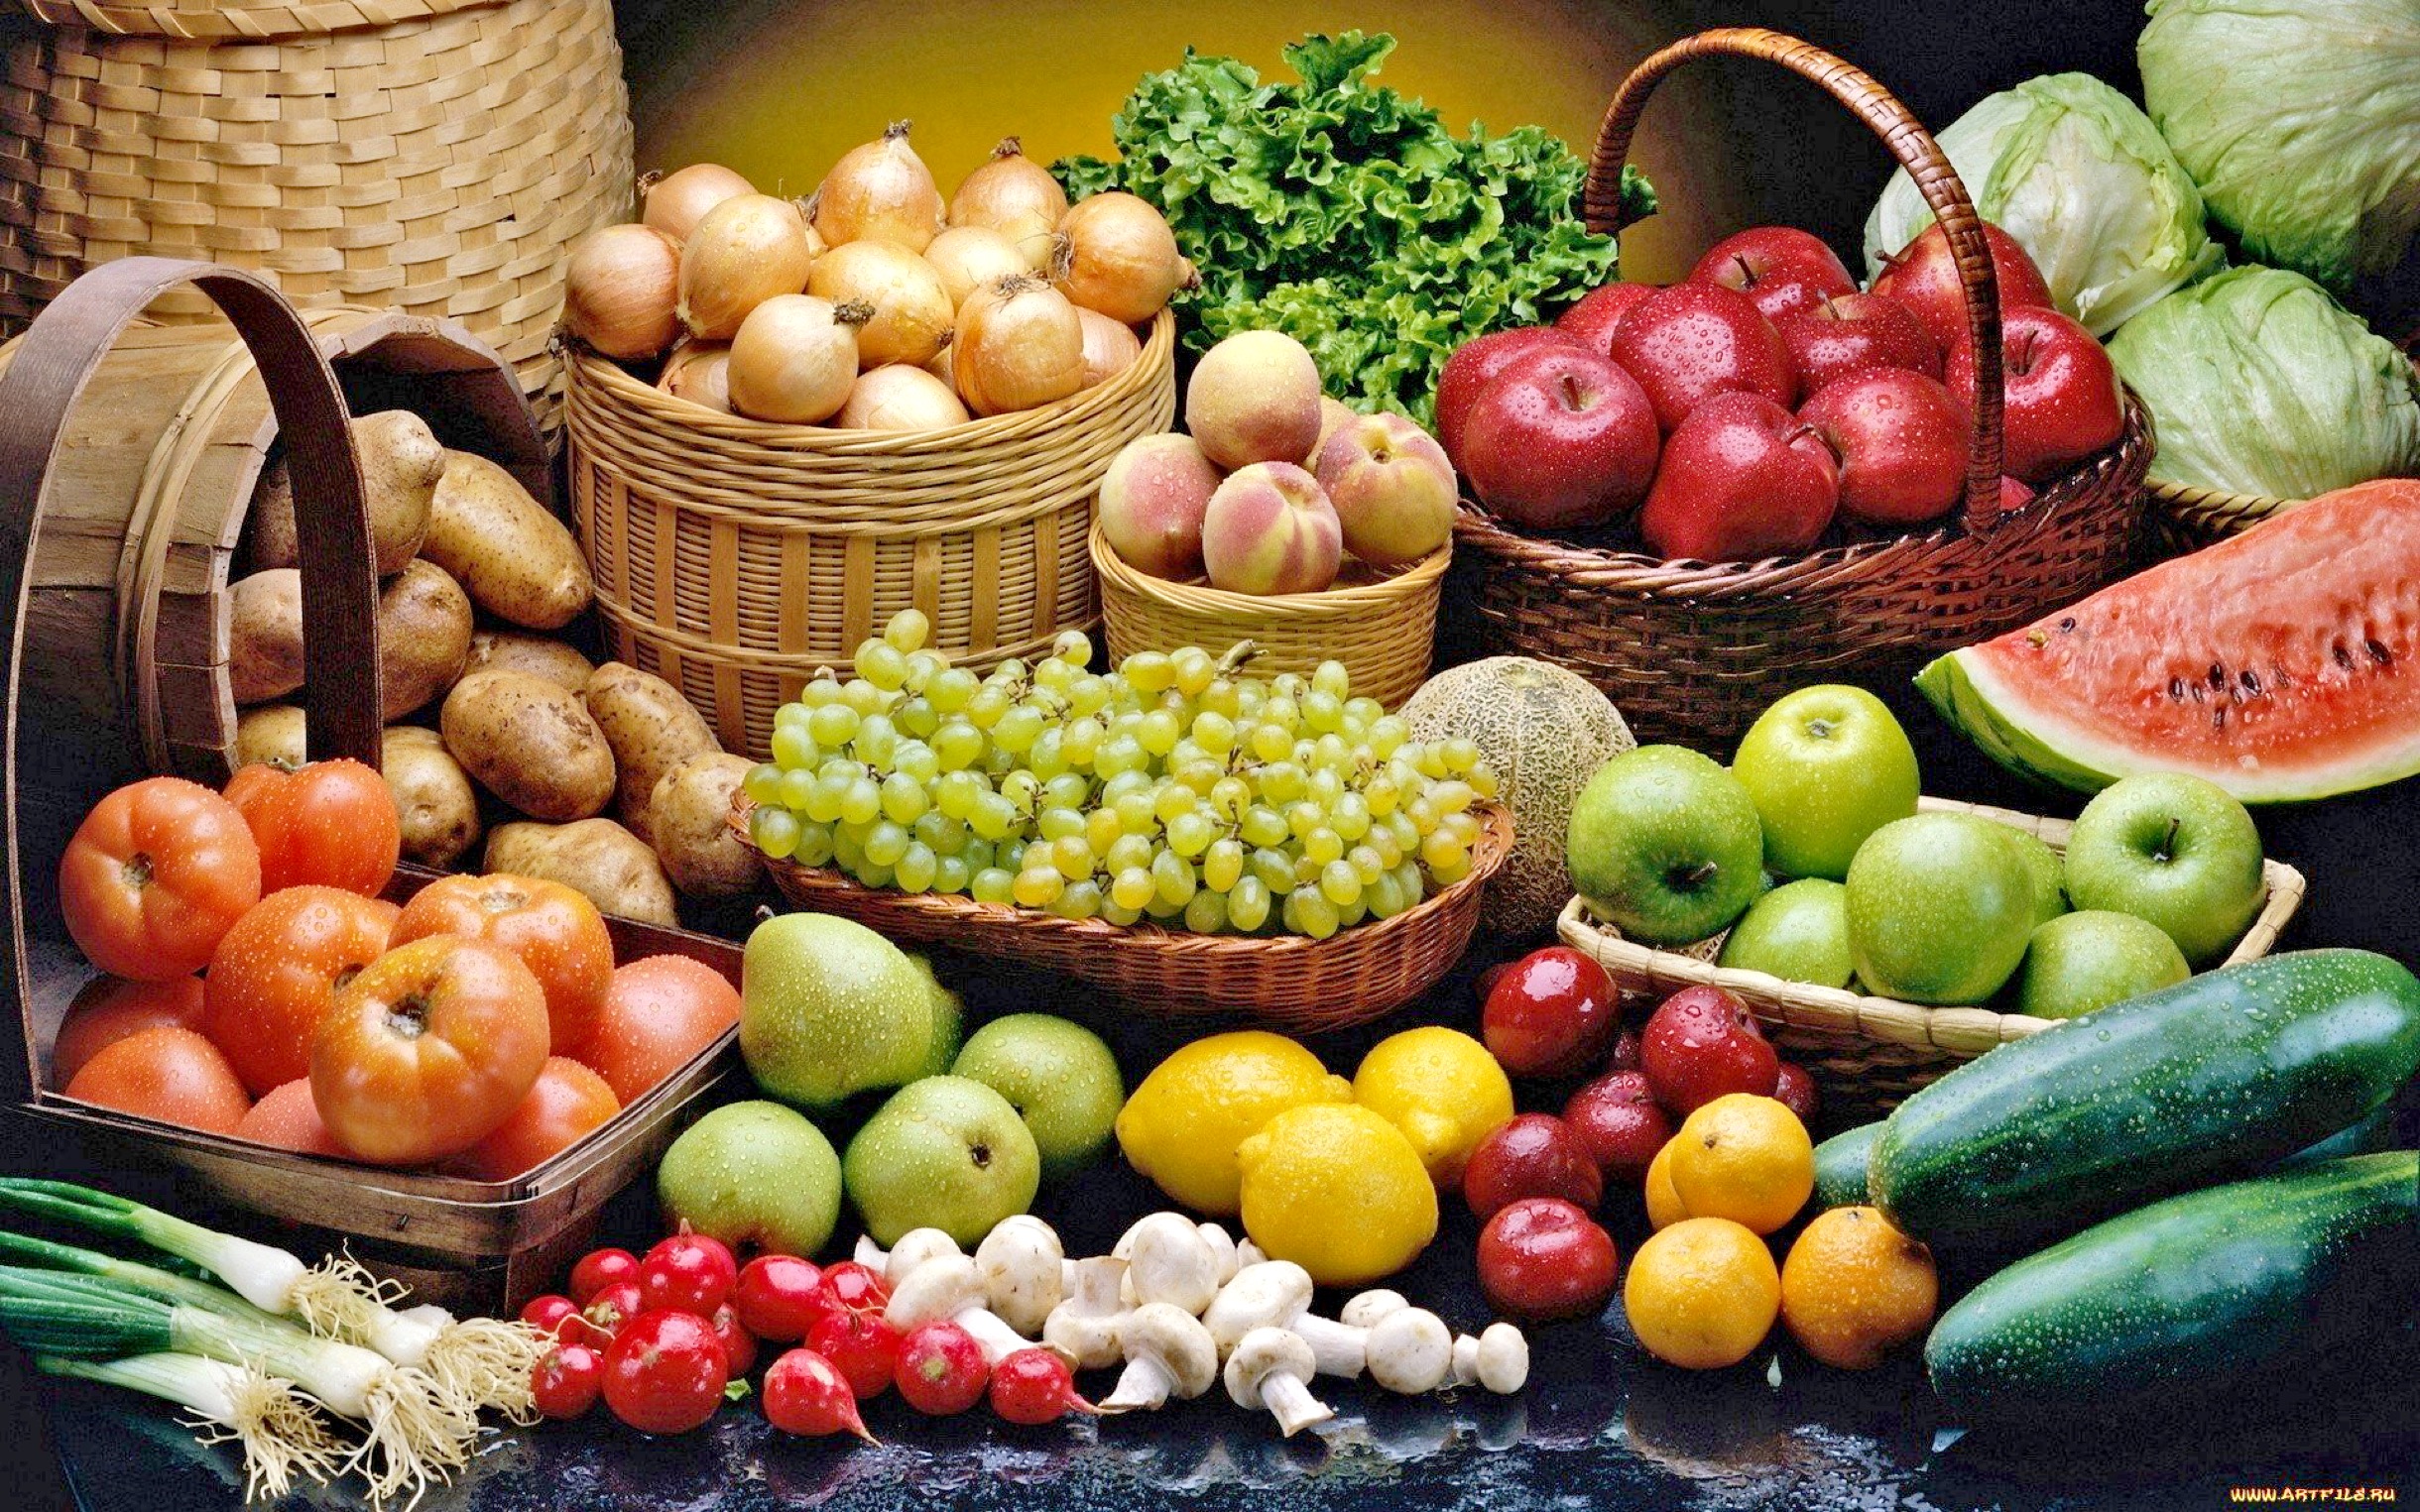 Плоды овощей и фруктов. Овощи и фрукты. Плоды и овощи. Овощи b ahernb. Овощи, фрукты, ягоды.